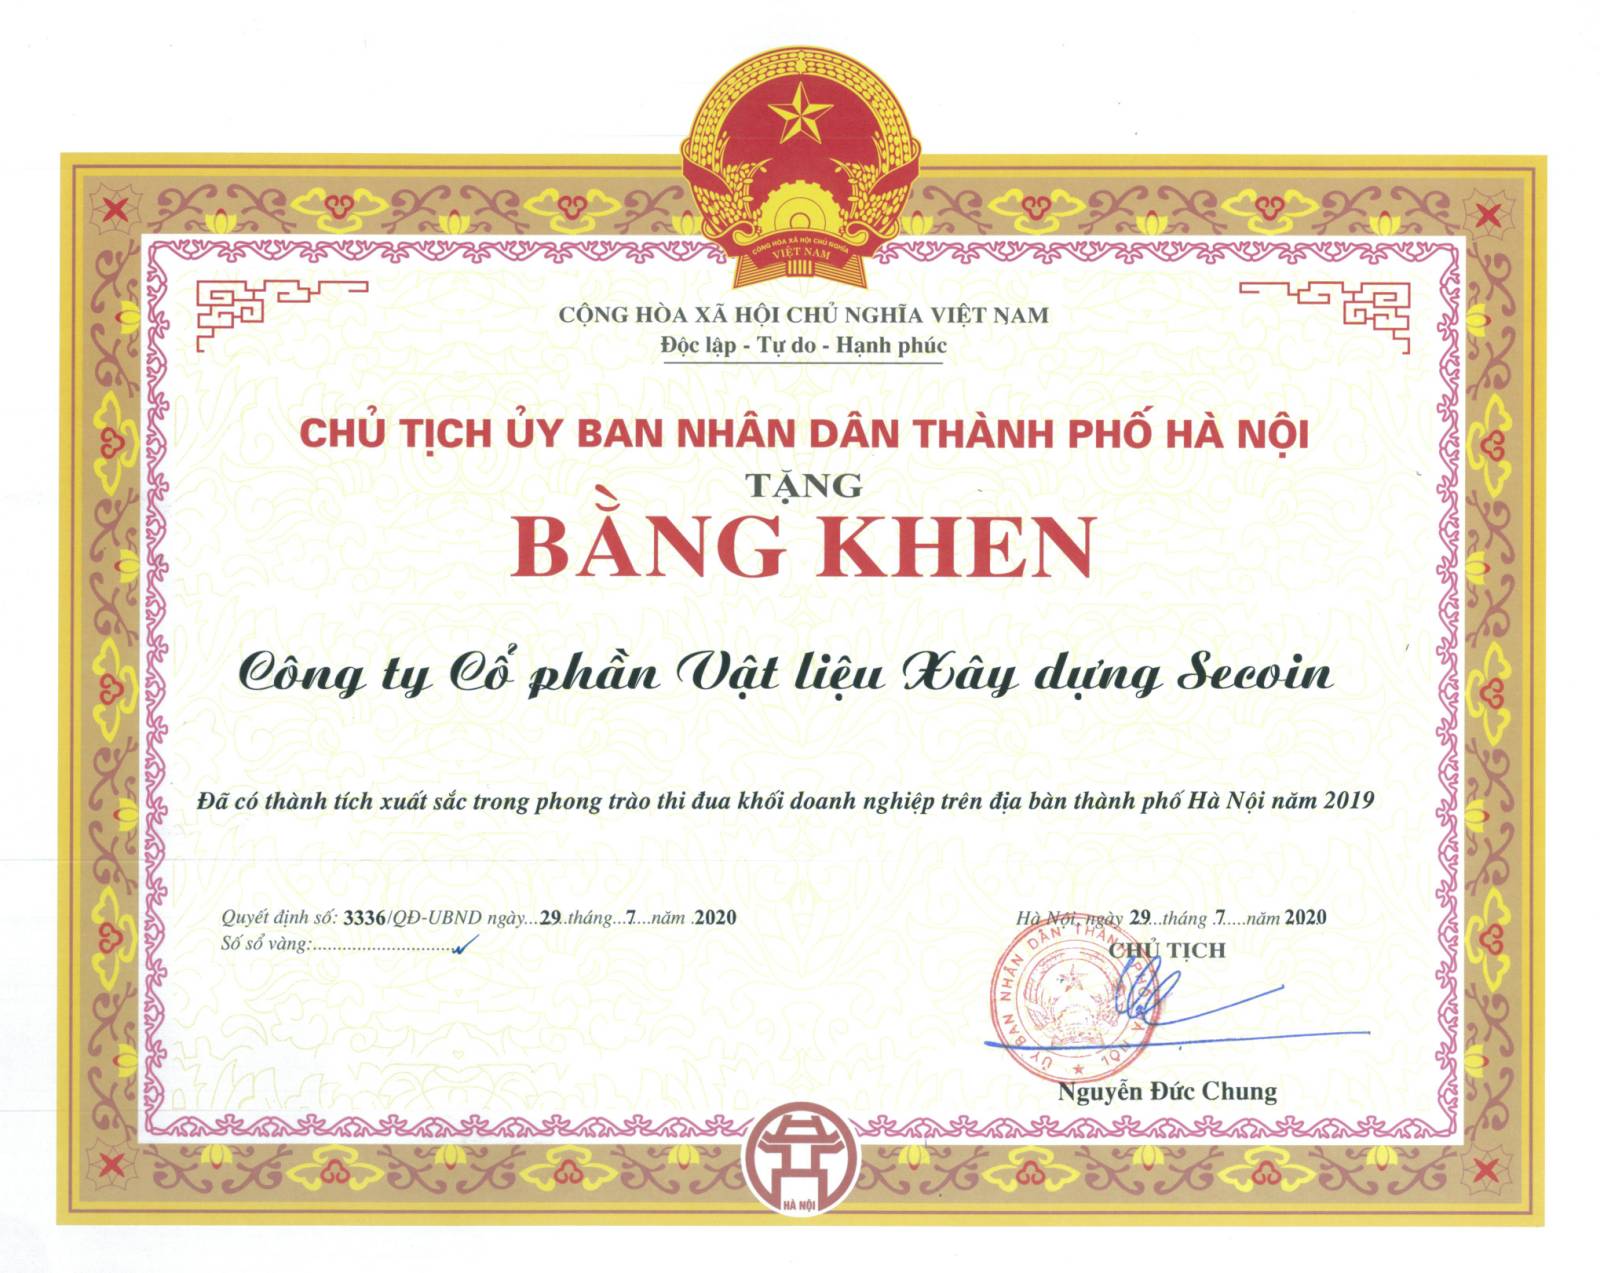 Chúc mừng Bà Đinh Hoài Giang nhận được bằng khen từ UBND TP.Hà Nội